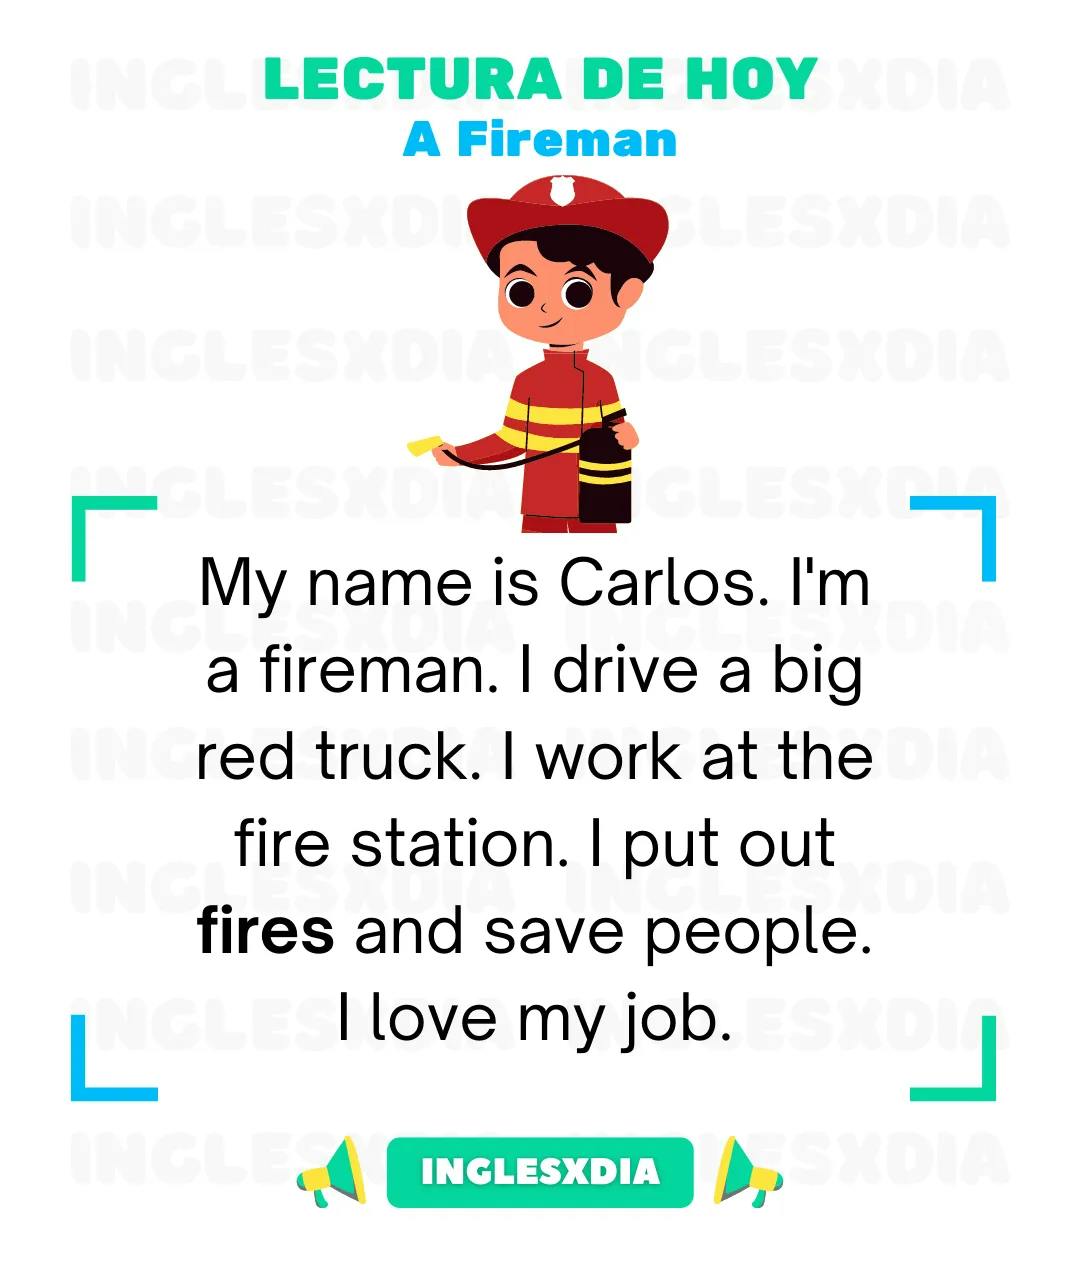 A Fireman